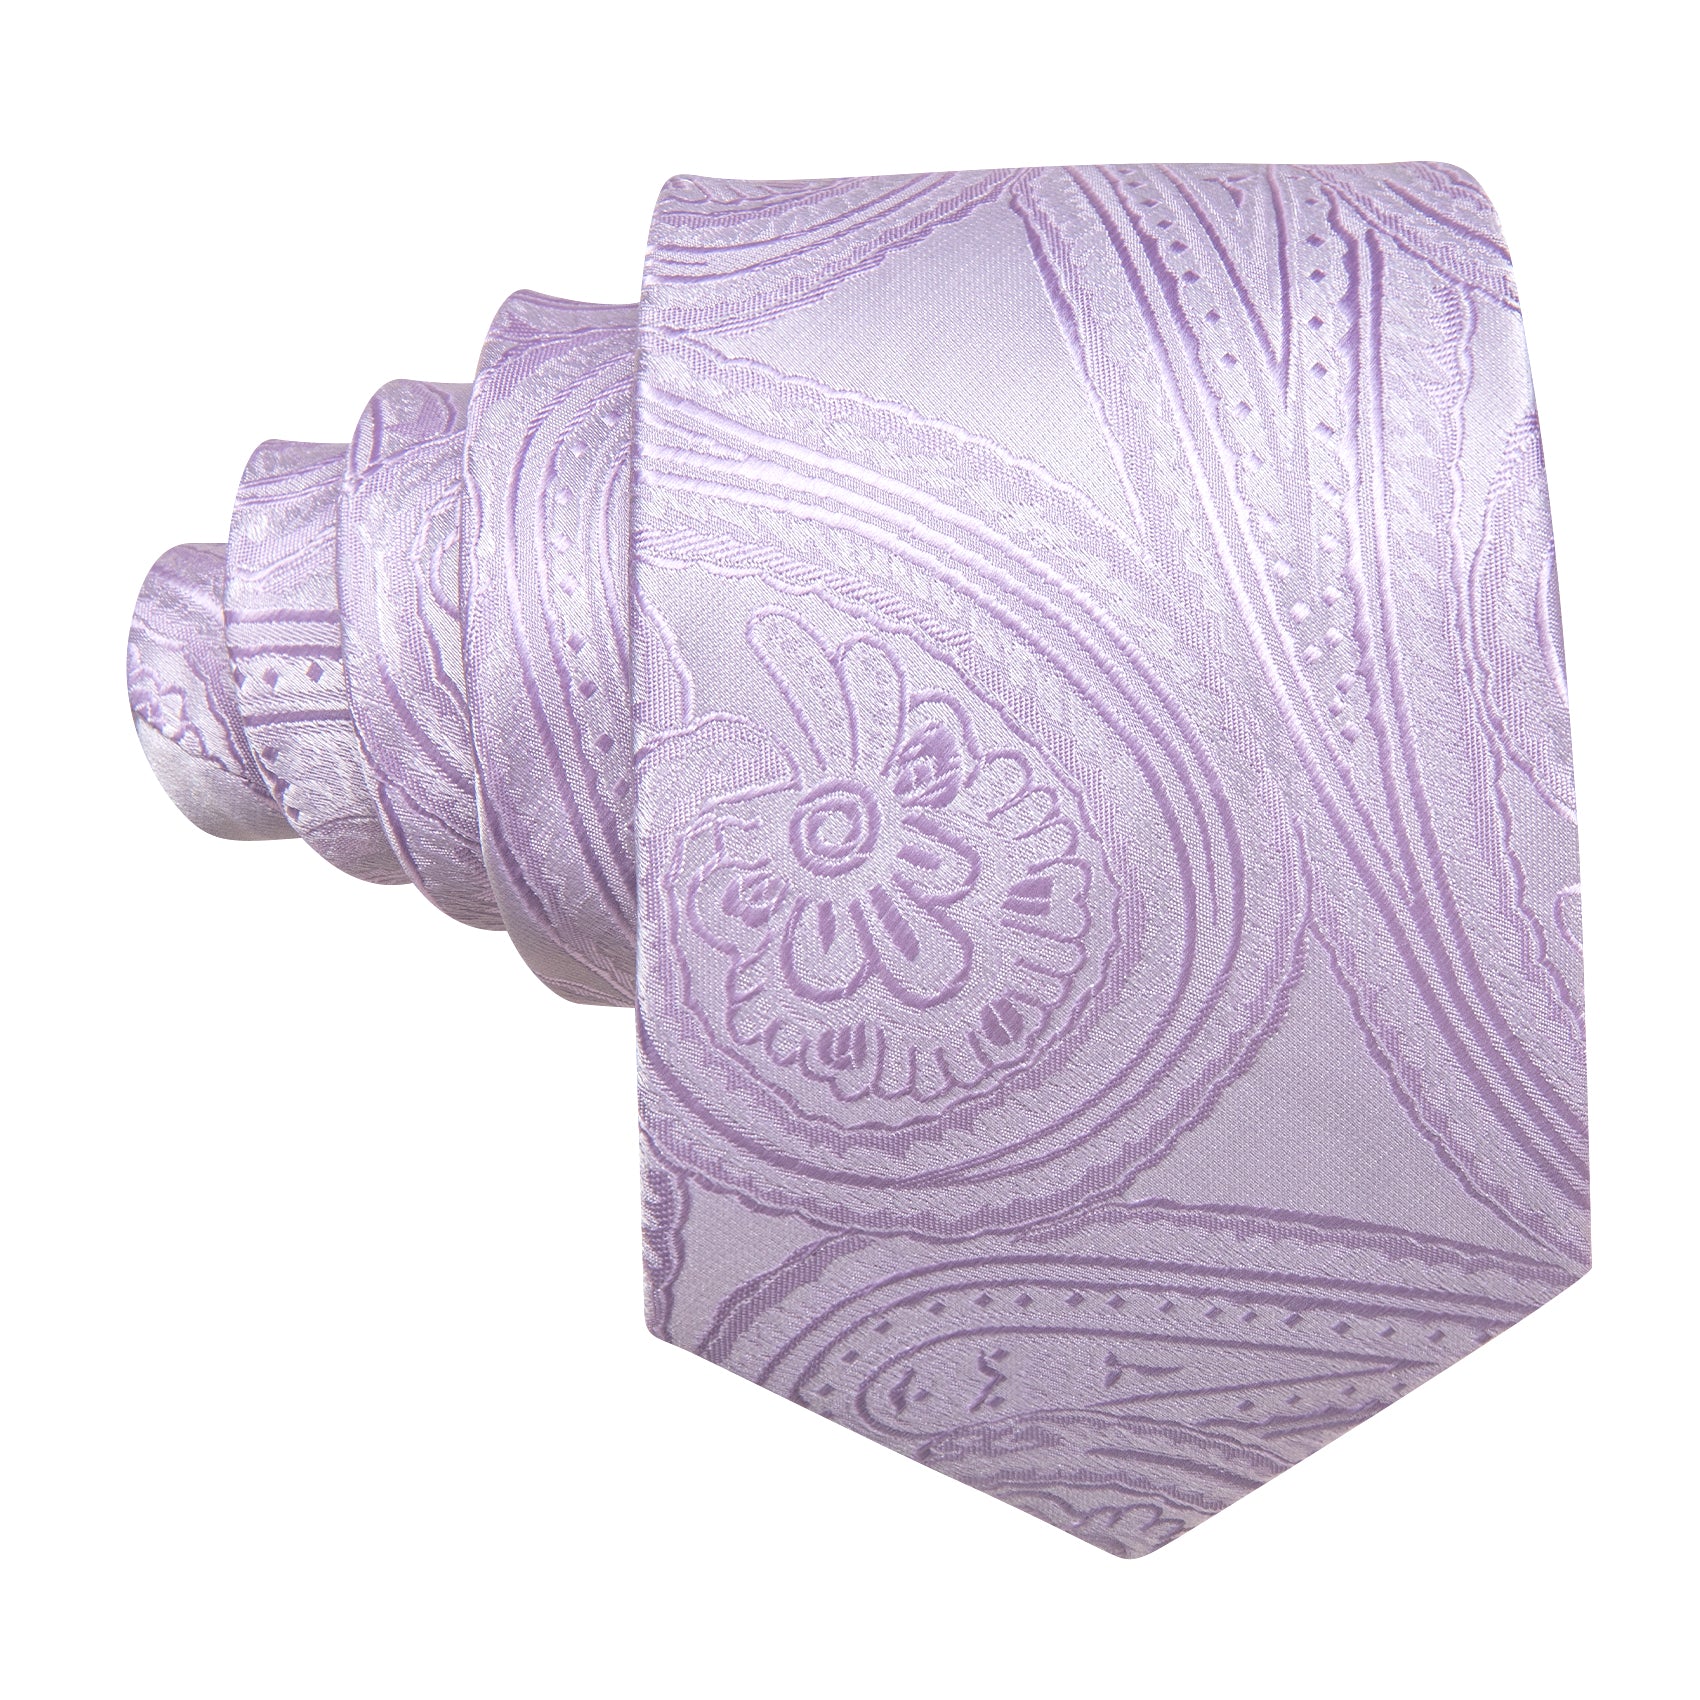 Mist Violet Paisley Silk Tie Handkerchief Cufflinks Set